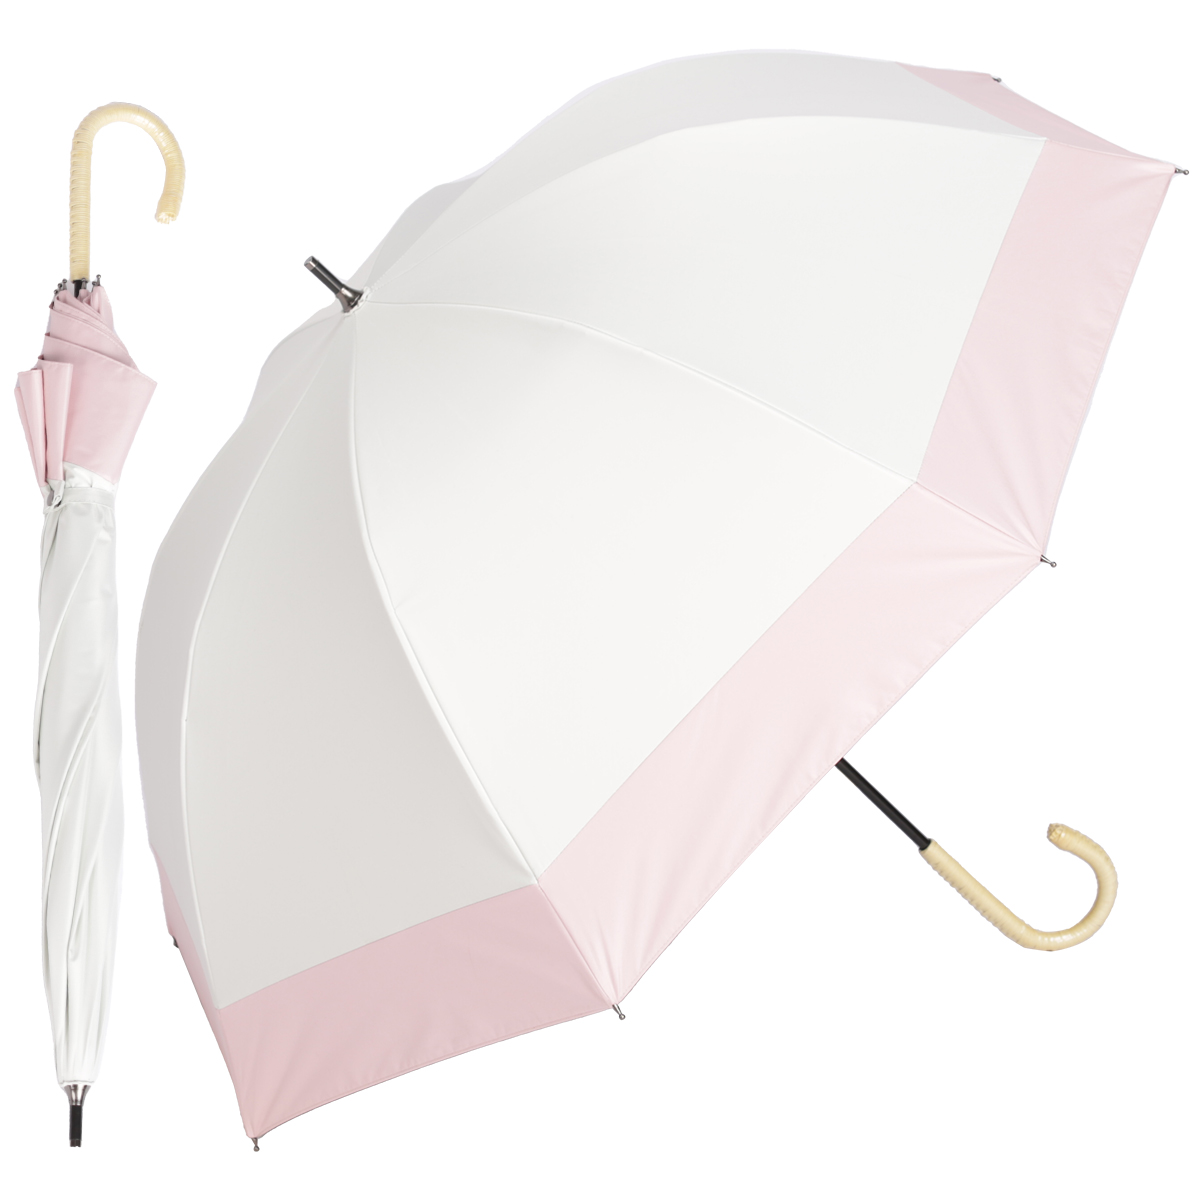 日傘 長傘 完全遮光 UVカット 100%遮光 深張り ドーム型 晴雨兼用 軽量 涼しい フリル 雨傘 おしゃれ 可愛い プレゼント 母の日ギフト